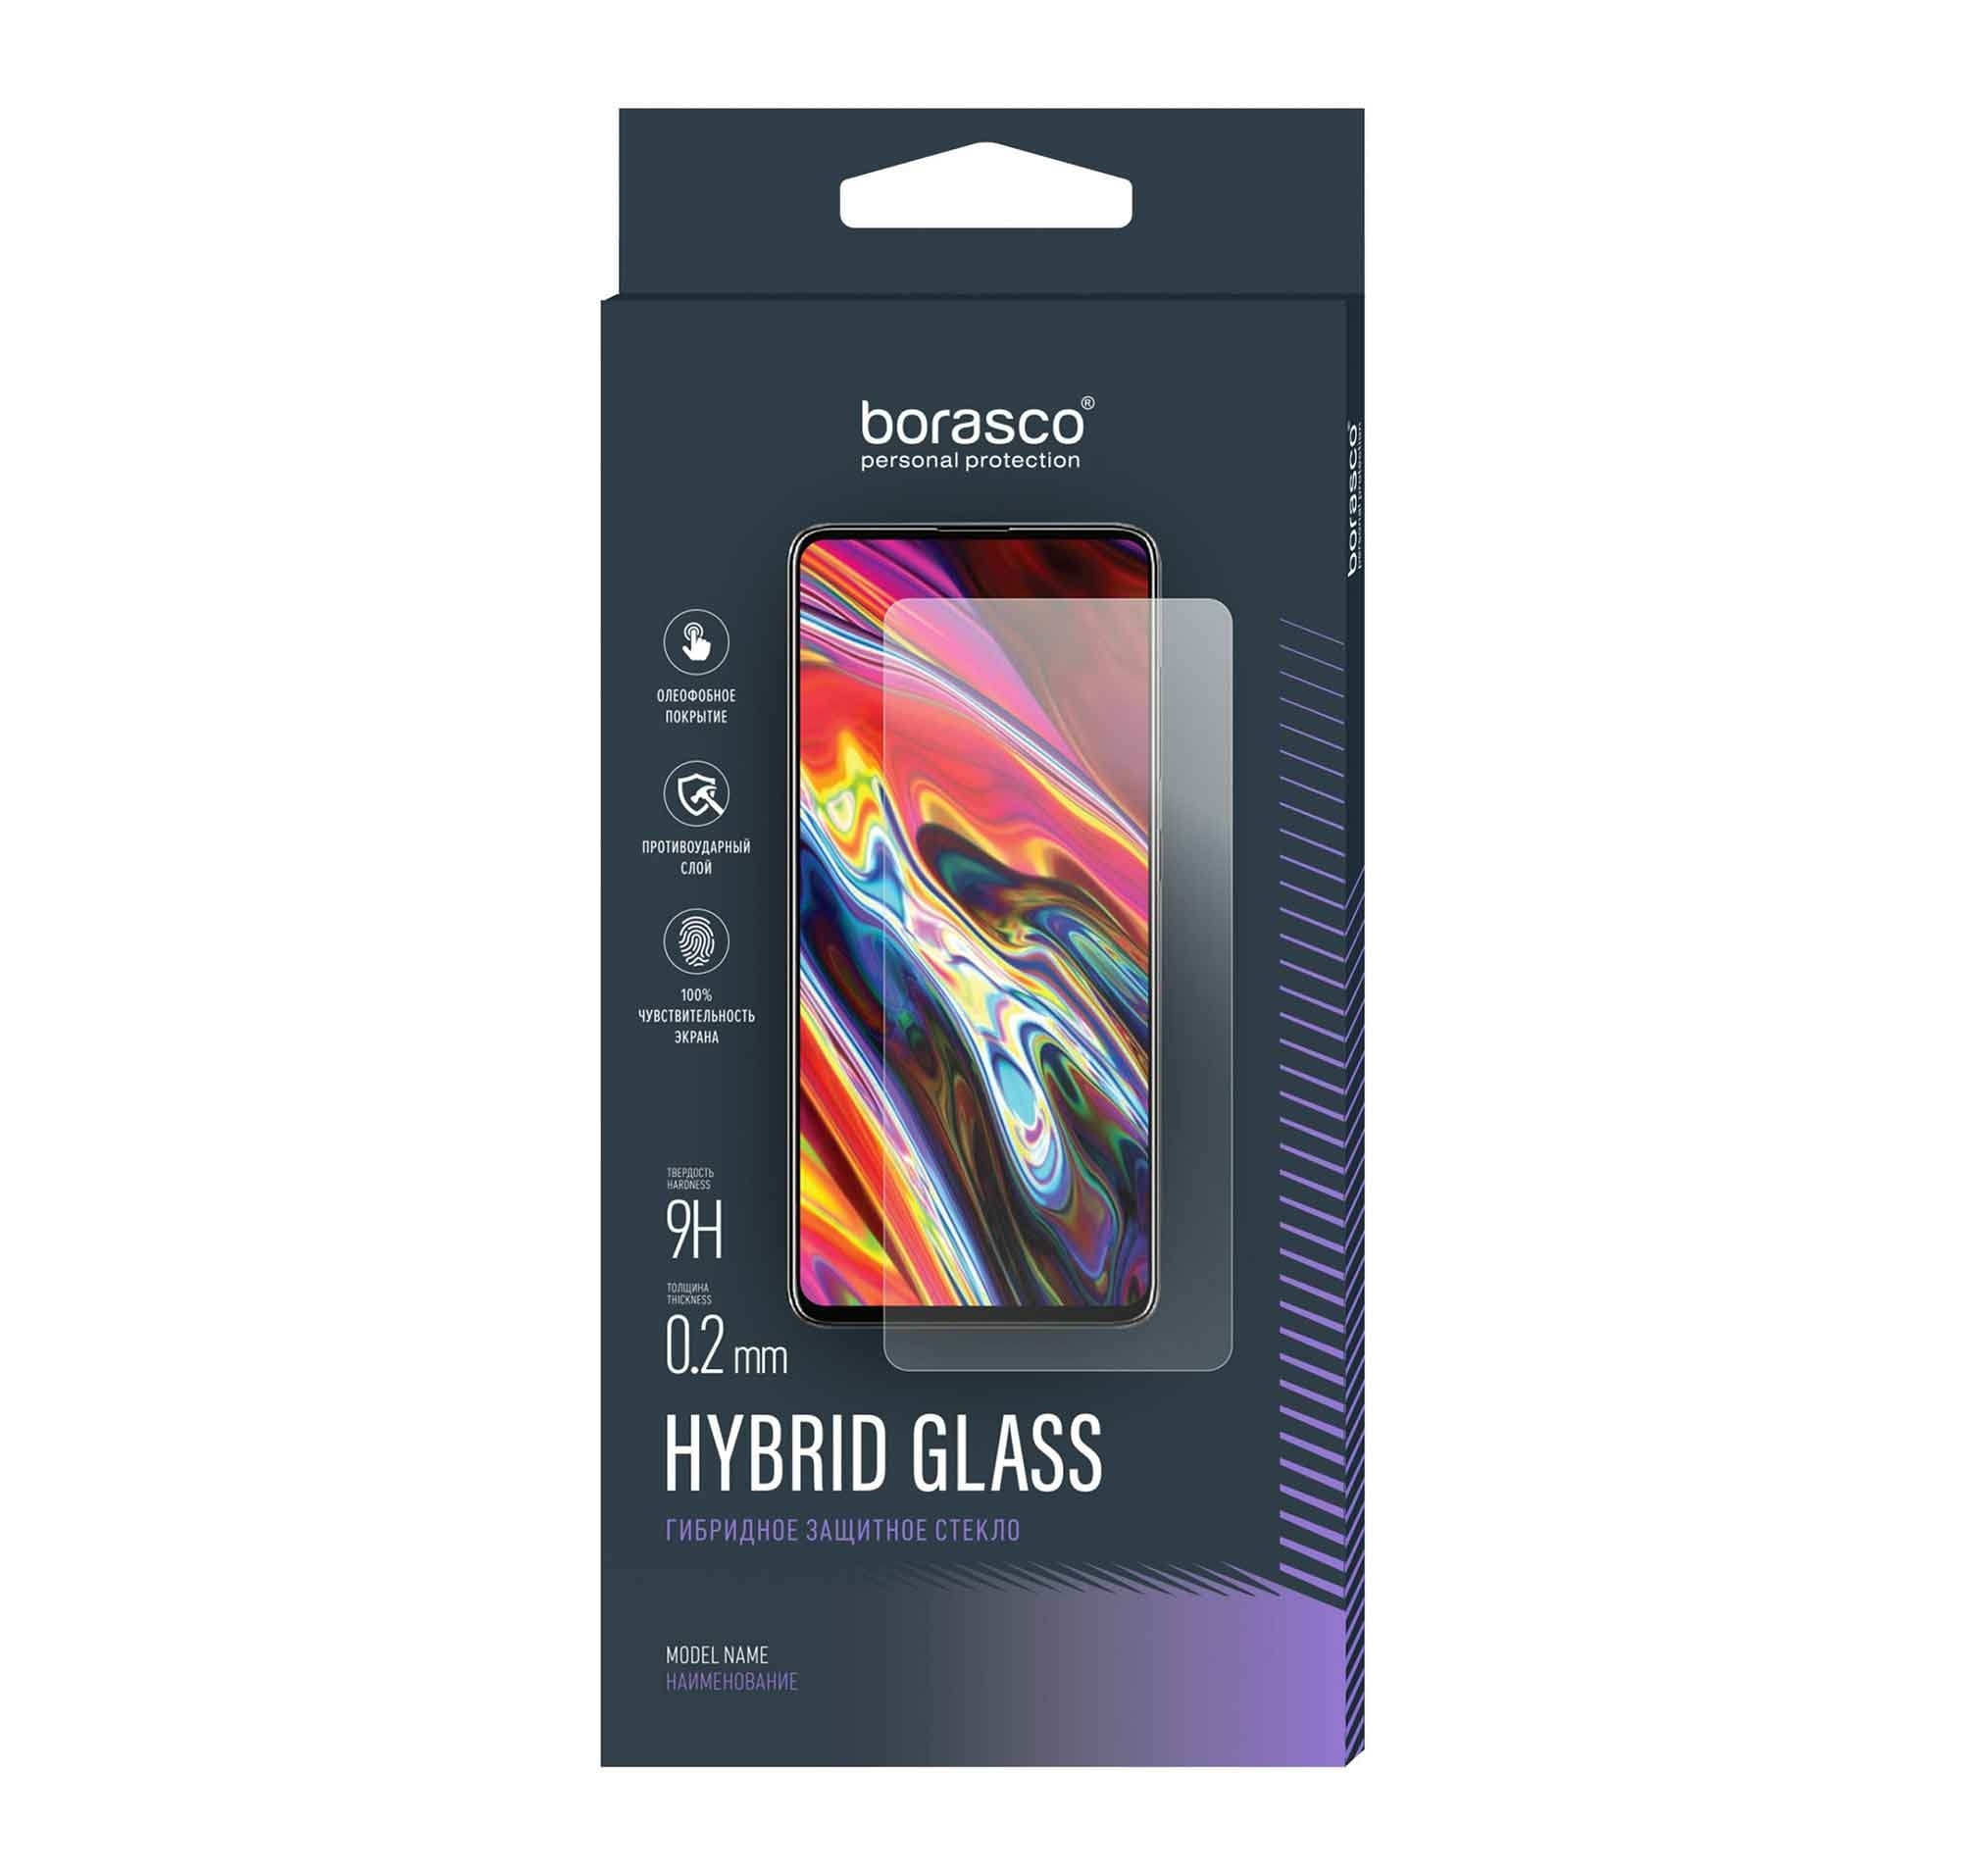 Стекло защитное BoraSCO Hybrid Glass для Honor X9 стекло с полным покрытием для huawei honor x9 стекло для honor x9 закаленное стекло защитная пленка для экрана honor x9 стекло для объектива